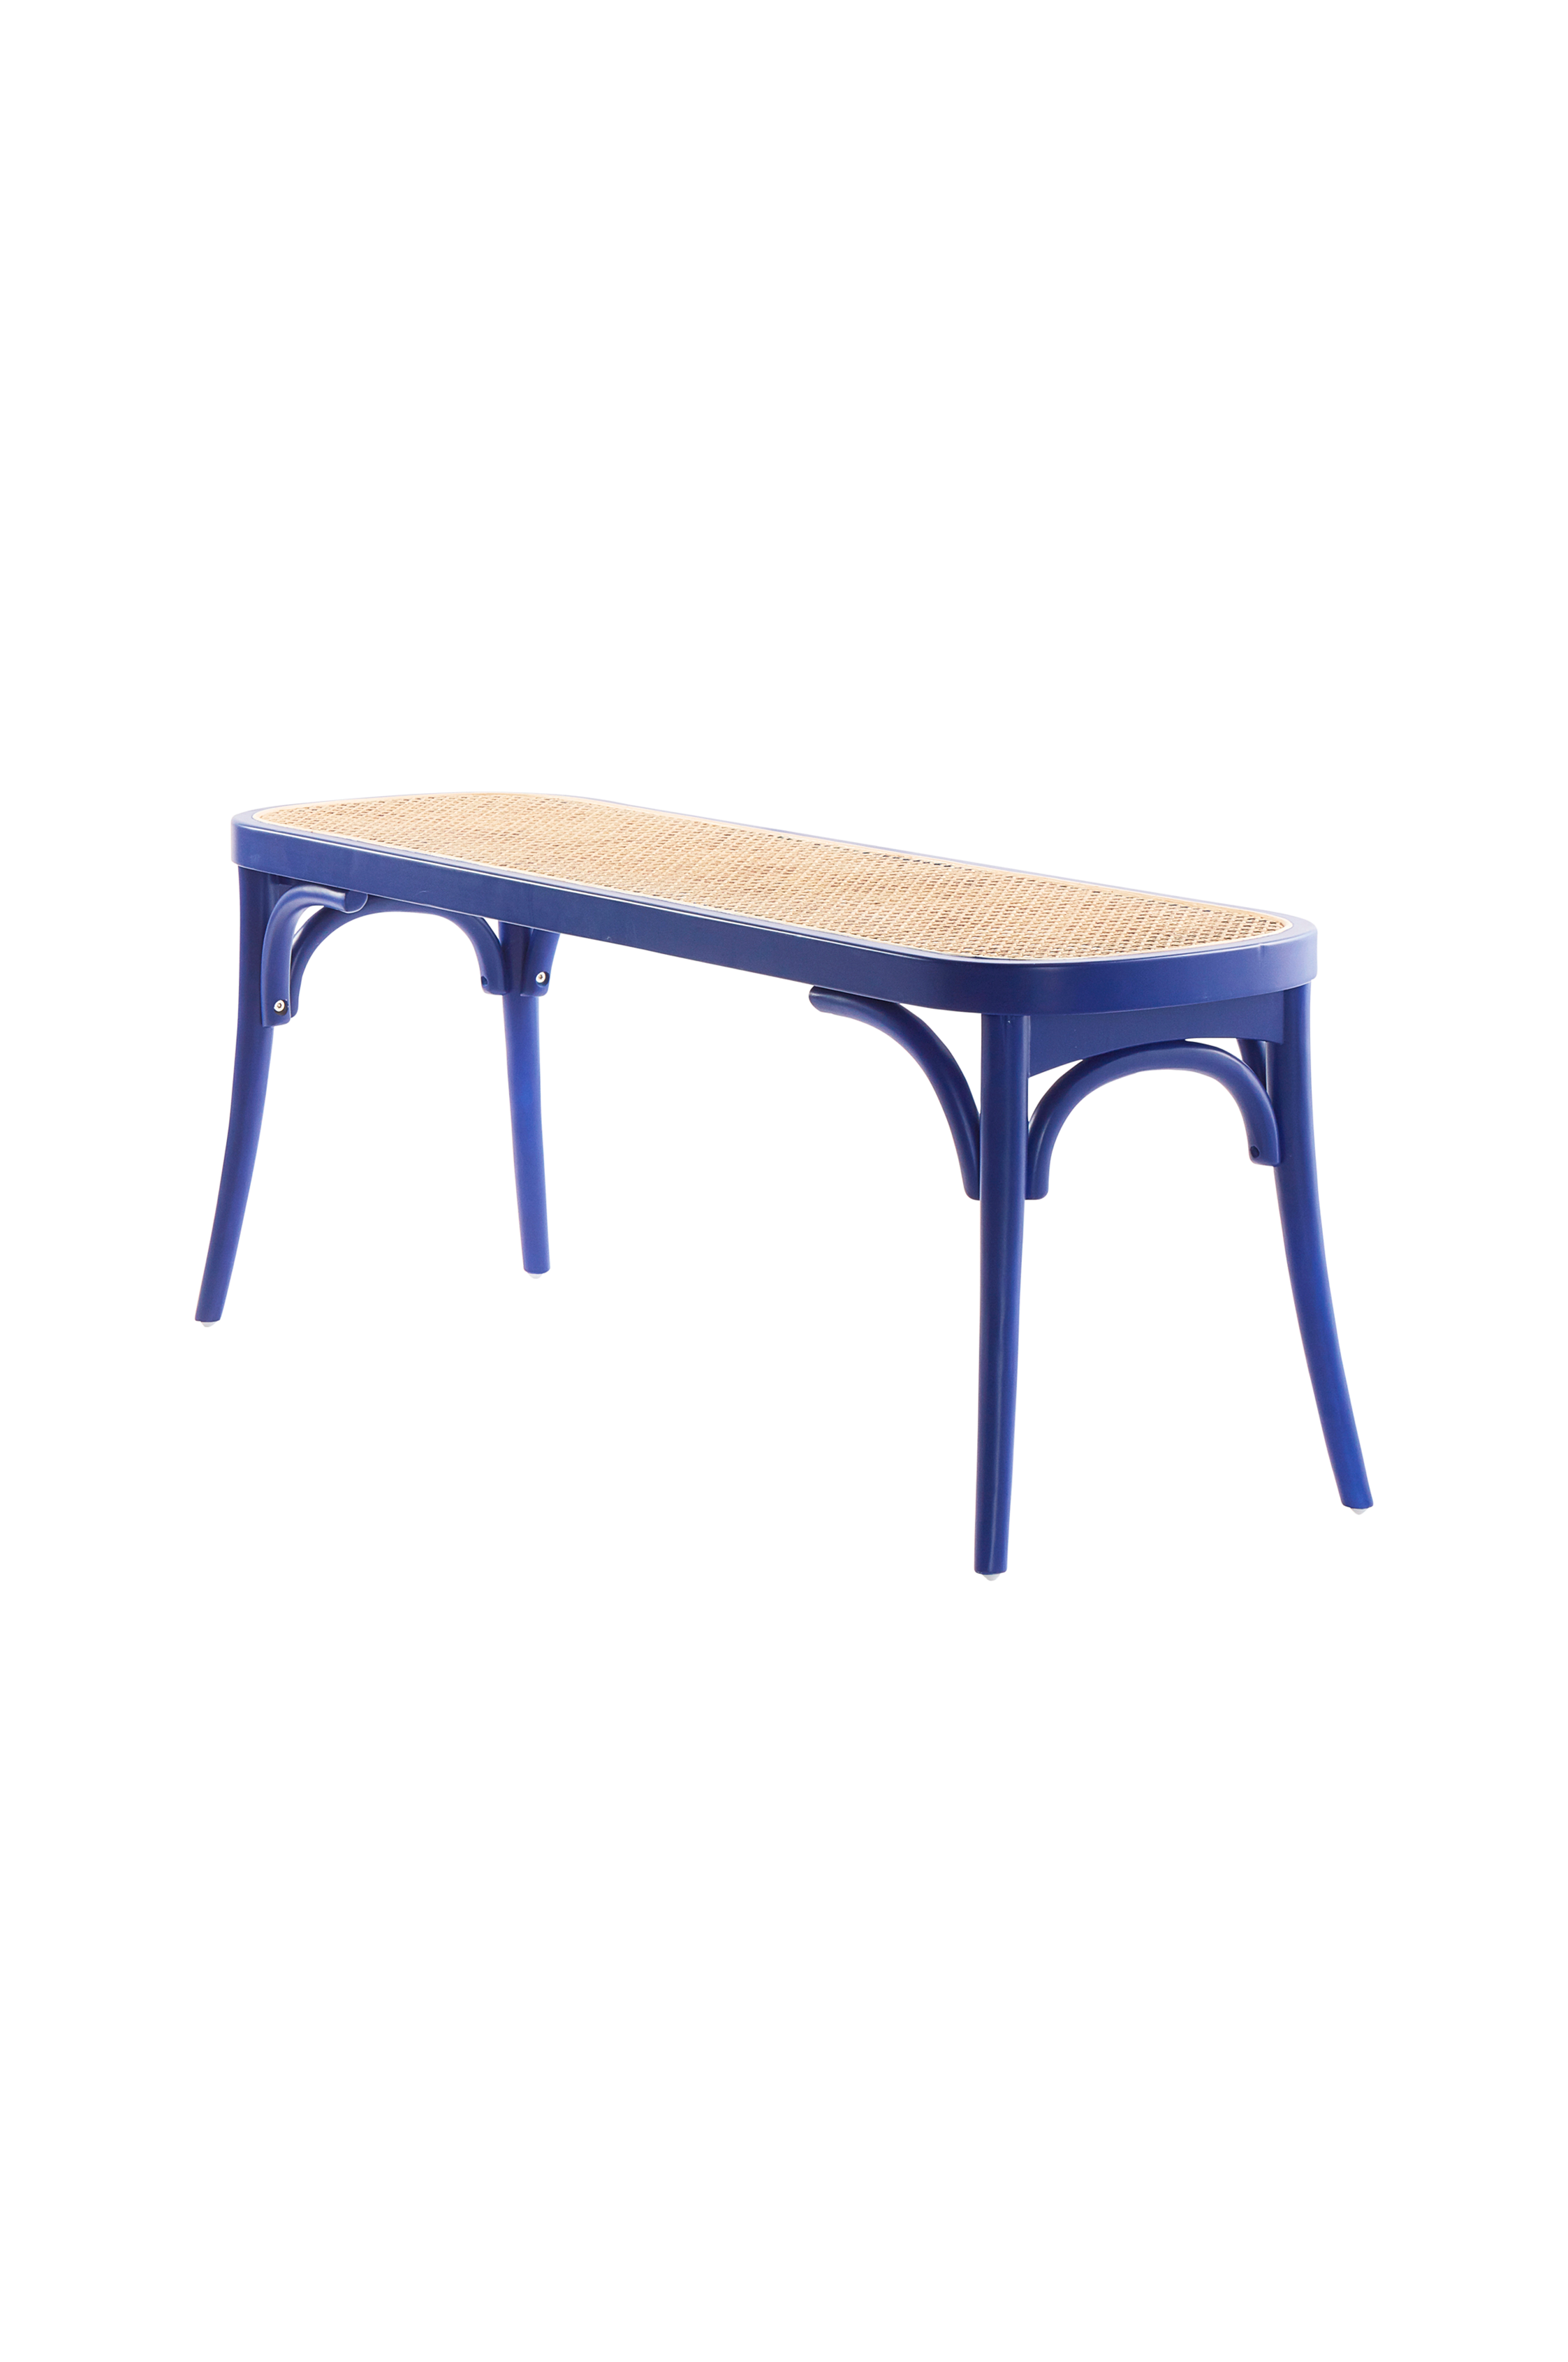 SKANÖR 121,5 cm - Blå - Møbler Jotex